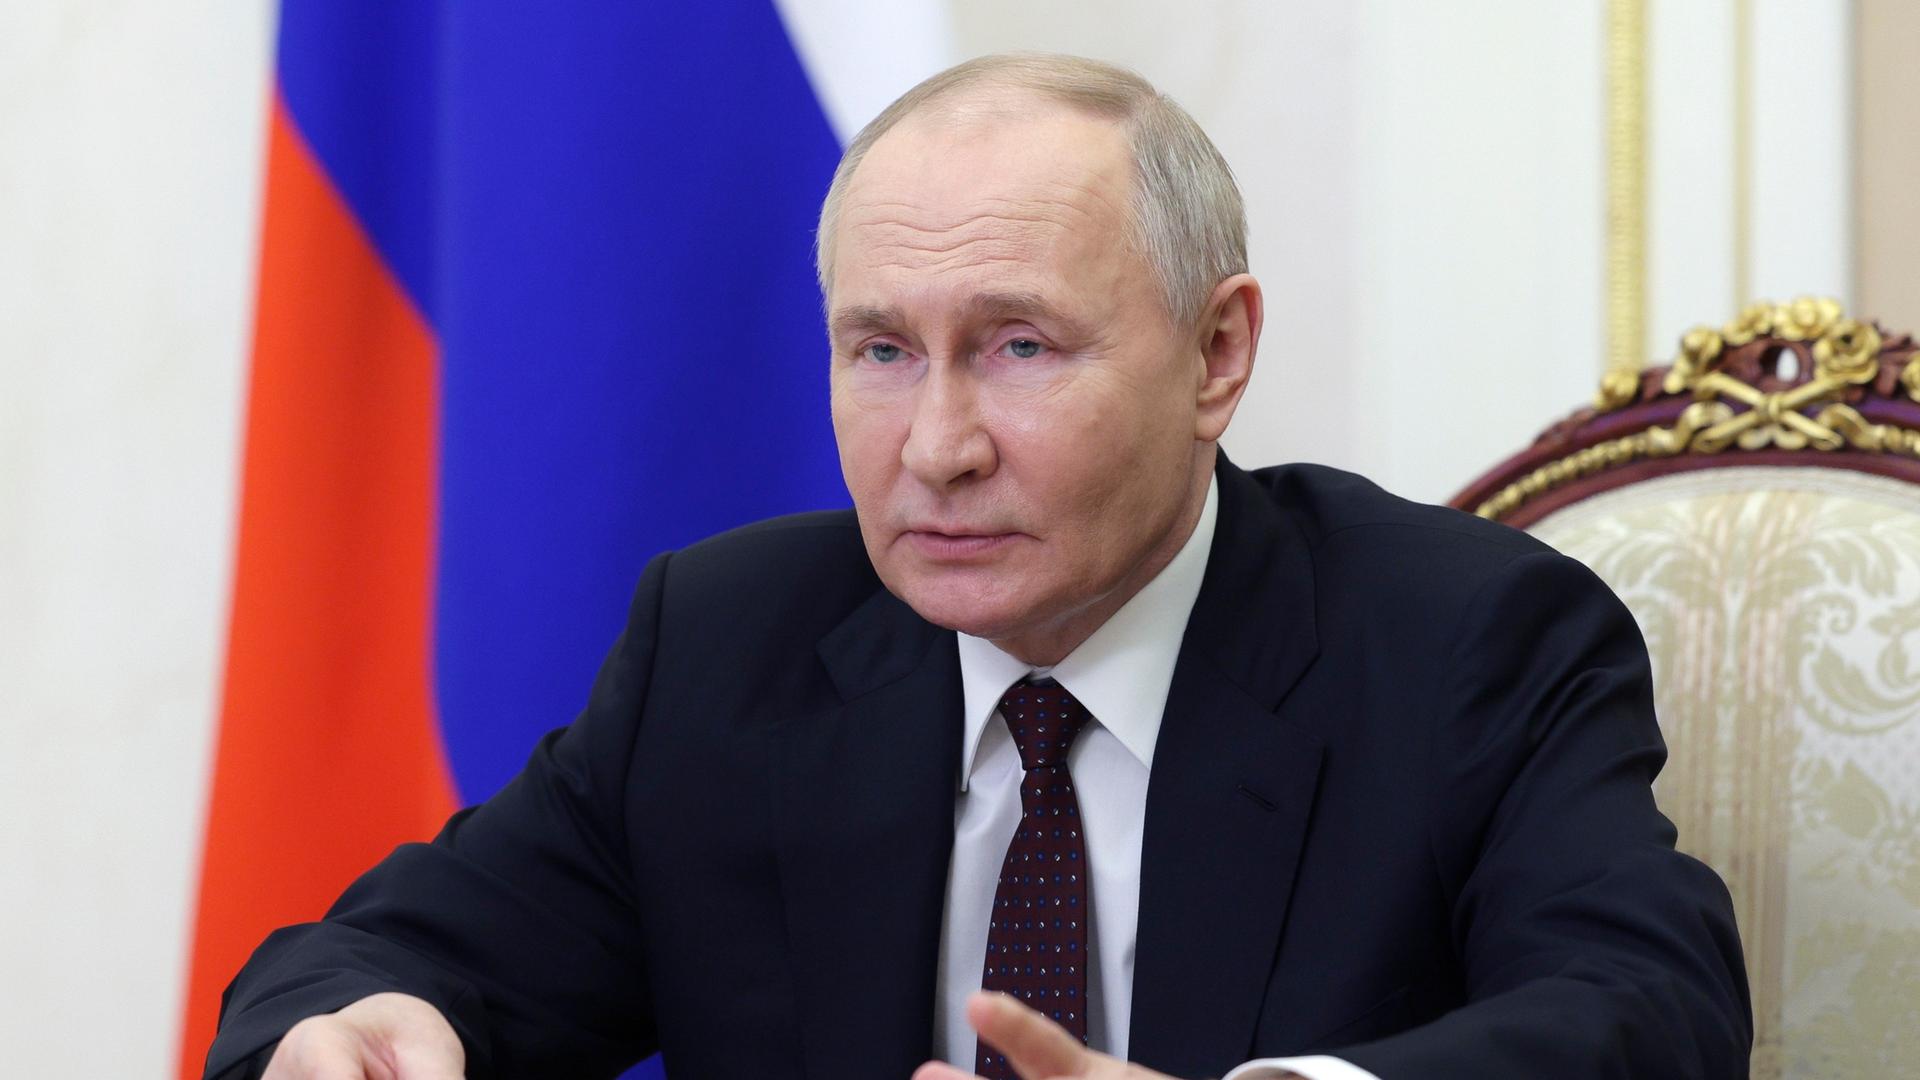 Russland, Moskau: Dieses von der staatlichen russischen Nachrichtenagentur Sputnik via AP veröffentlichte Foto zeigt Wladimir Putin, Präsident von Russland, der eine Sitzung über wirtschaftliche Fragen per Videokonferenz im Kreml in Moskau leitet. 